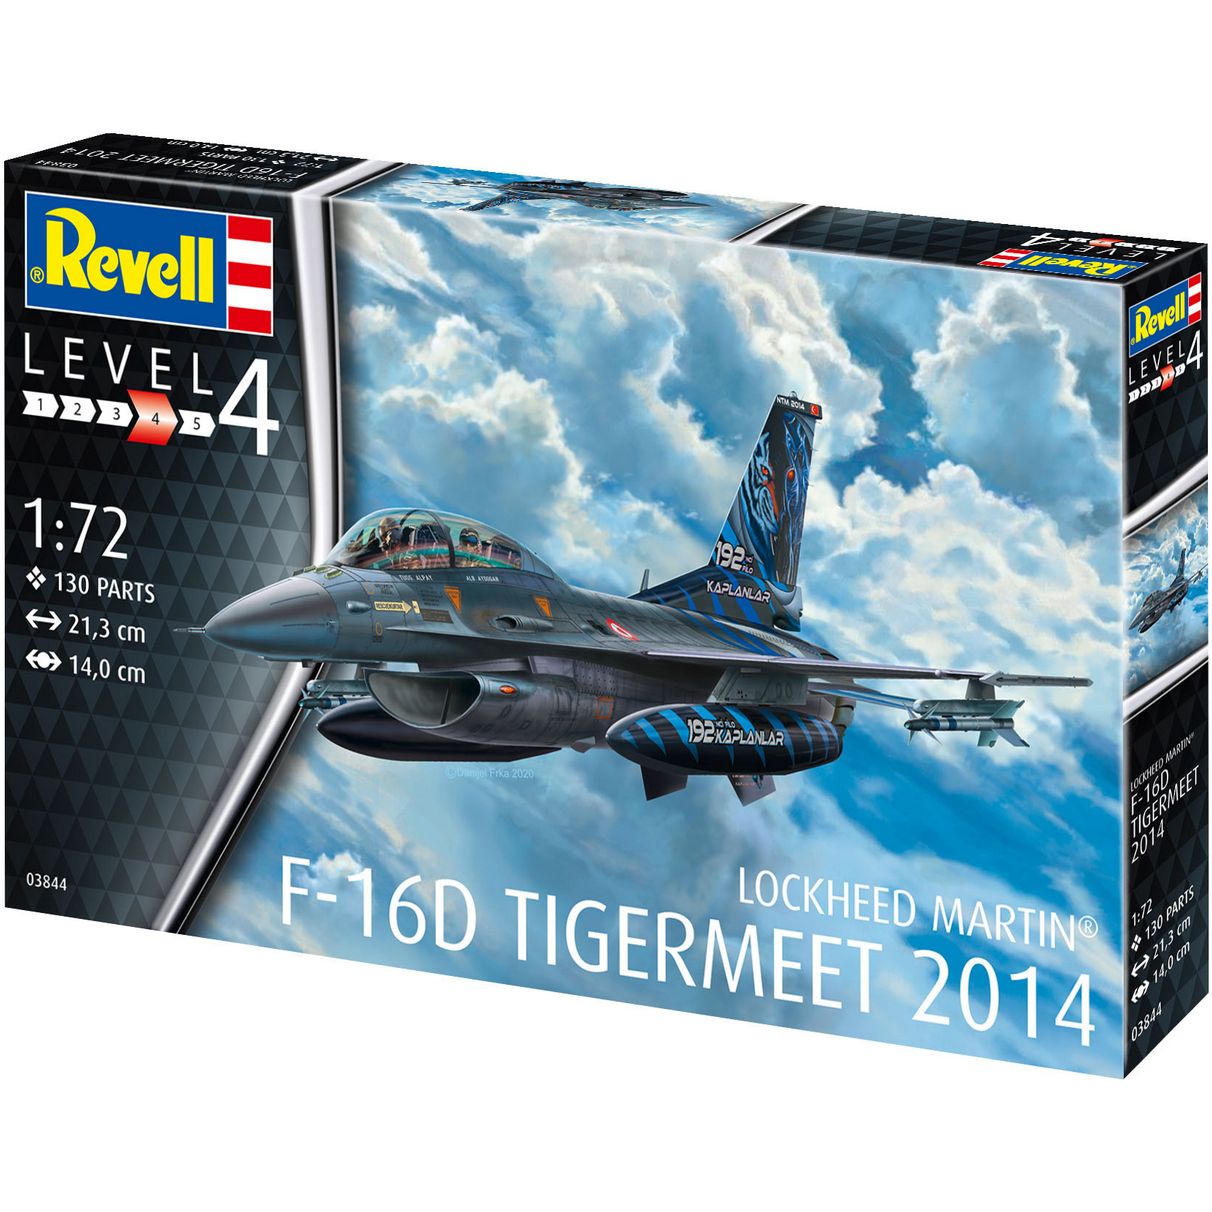 Збірна модель Revell Літак F-16D Tigermeet 2014, рівень 4, масштаб 1:72, 130 деталей (RVL-03844) - фото 1